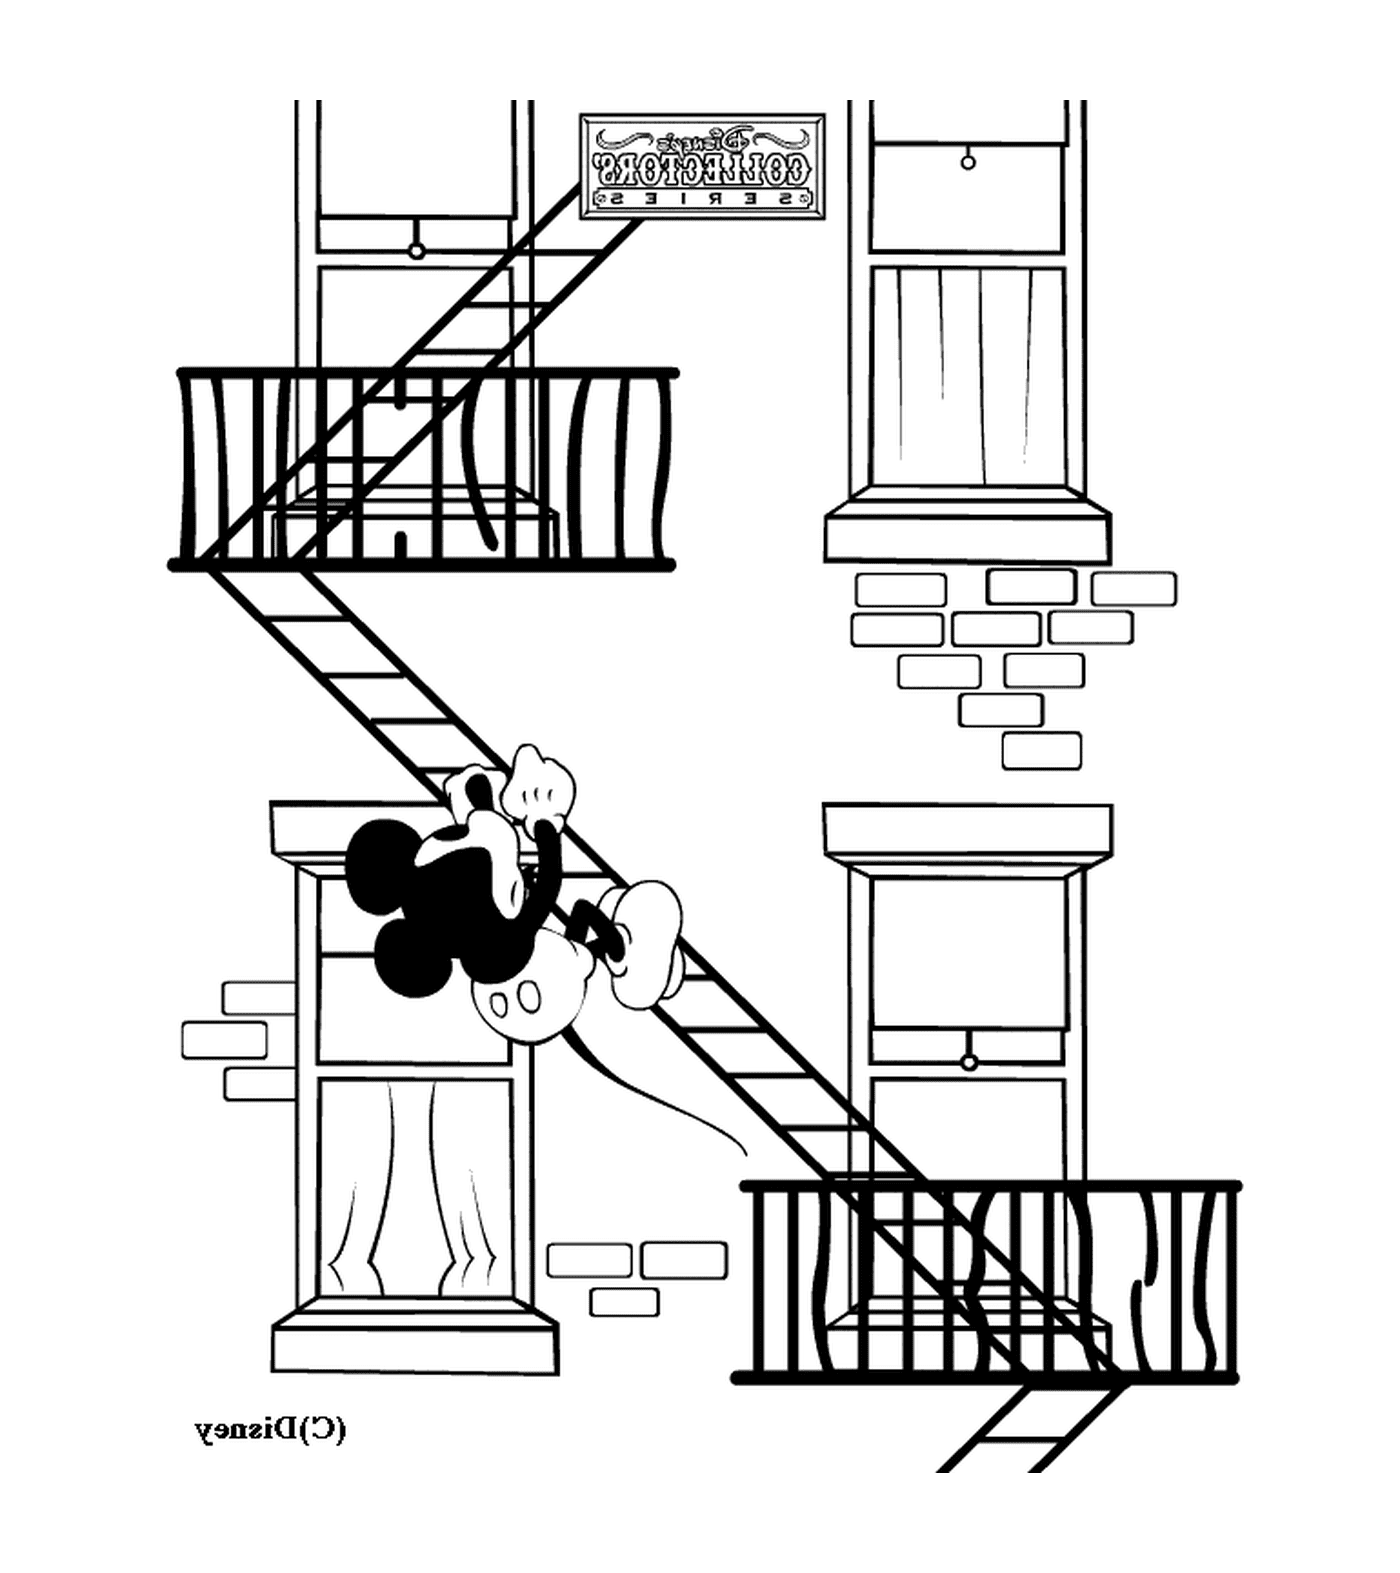  आपातकालीन सीढ़ियों में मिकी : एक गिर आदमी के साथ आपातकालीन सीढ़ियाँ 